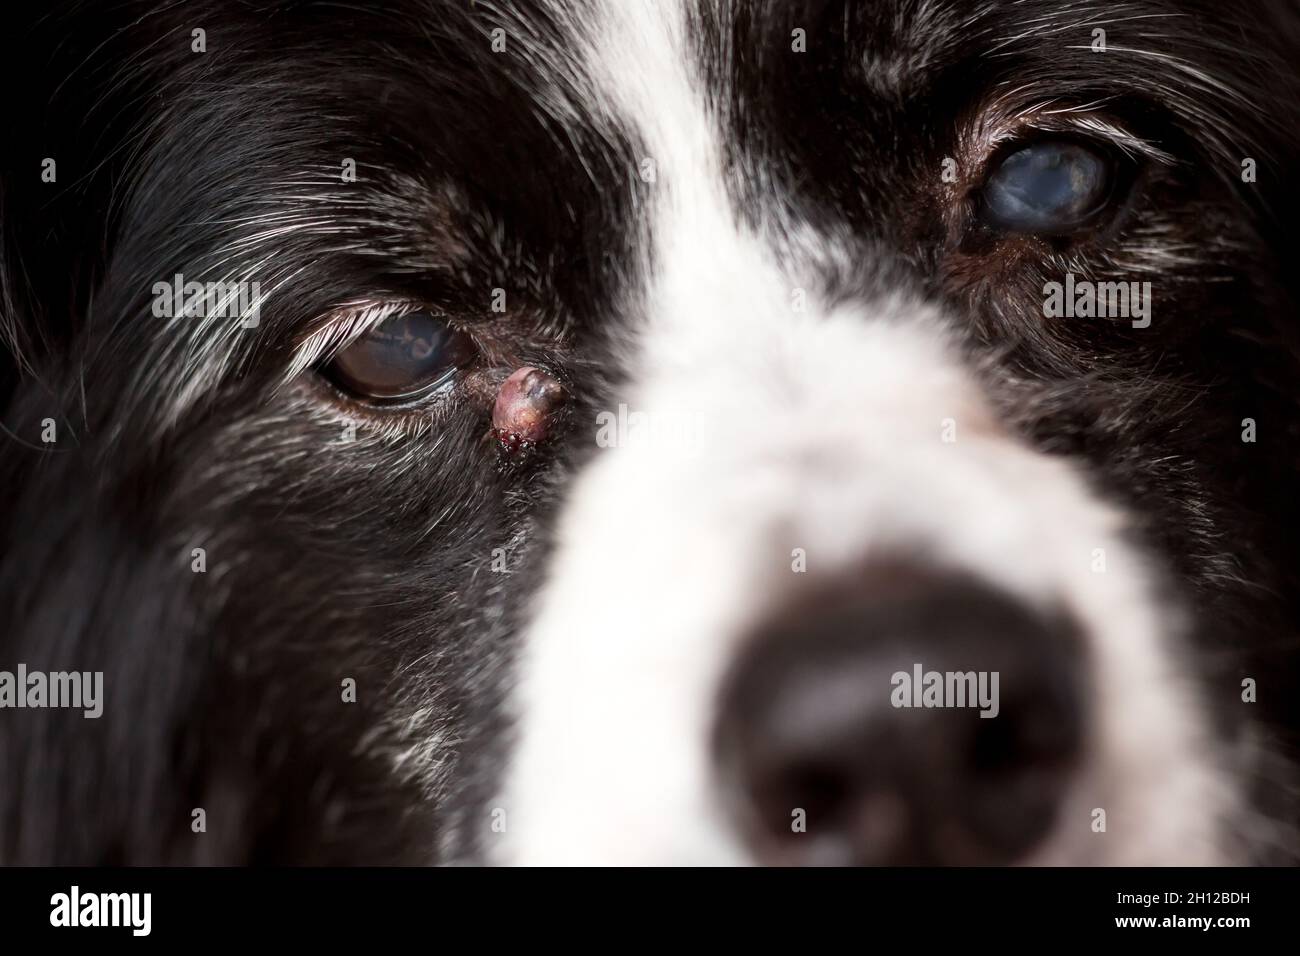 Un cane anziano con una cisti sebacea infiammata vicino al suo occhio Foto Stock